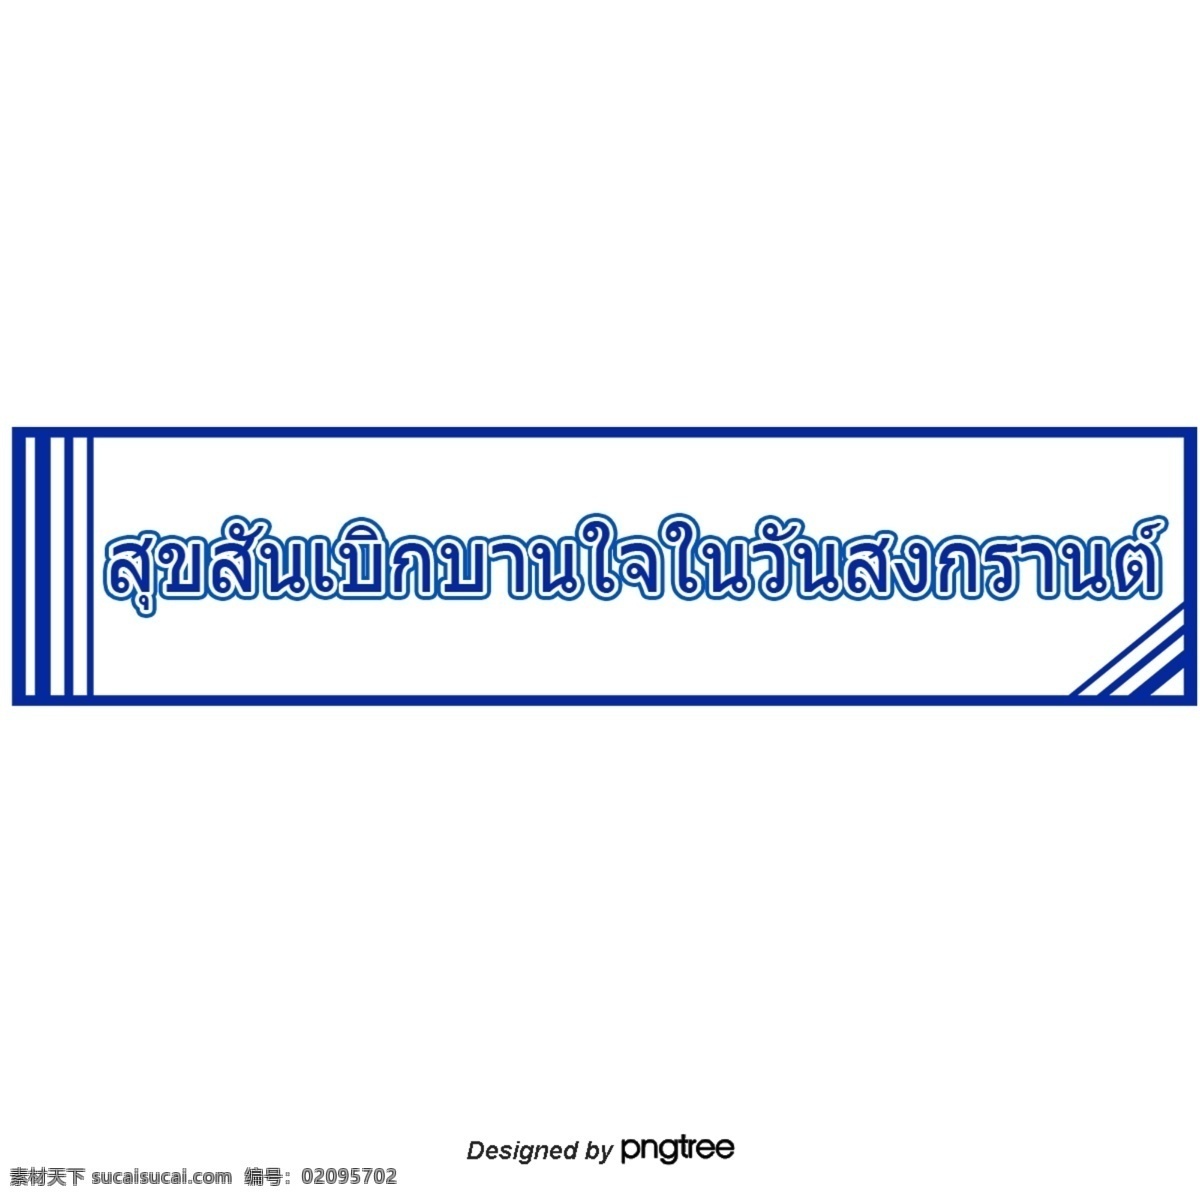 泰国 字母 字体 宋干节 快乐 深蓝色 矩形 框架 快乐快乐